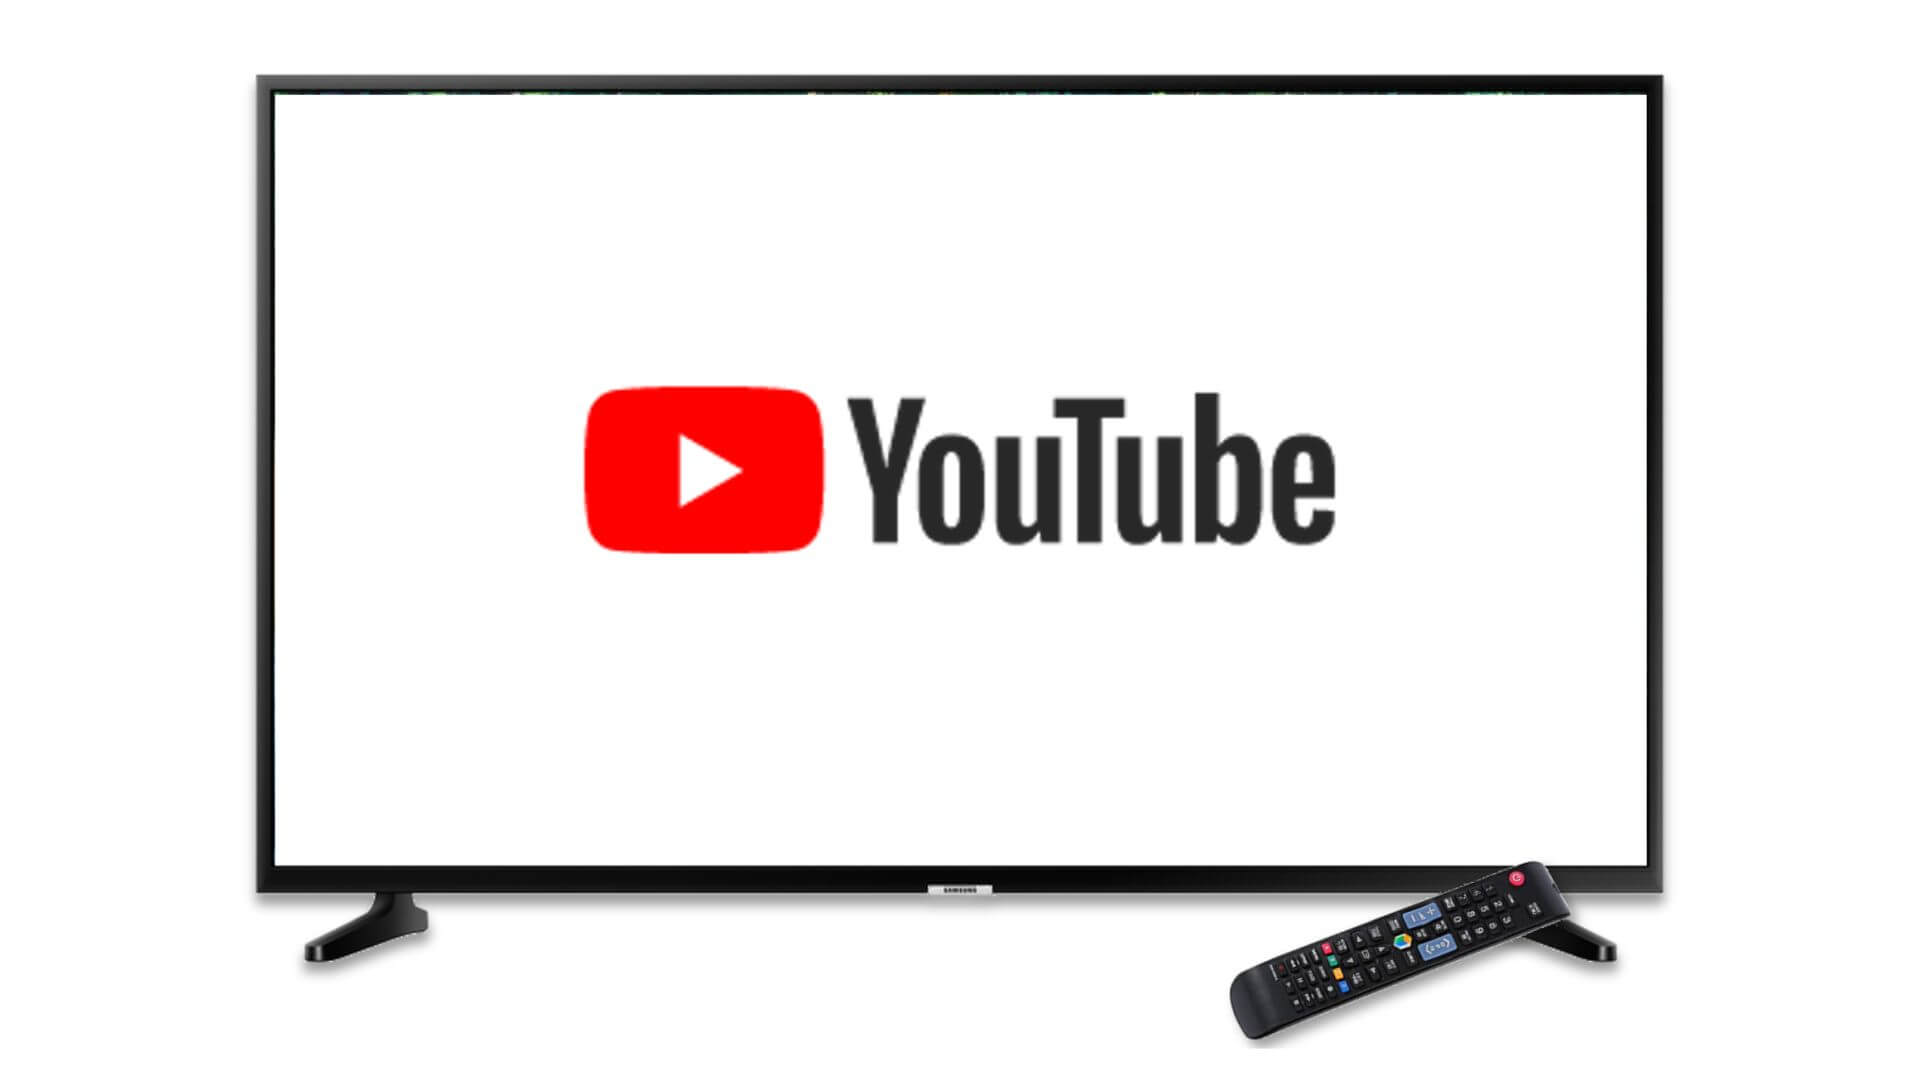 Las campañas publicitarias de YouTube se orientan a "pantallas de televisión" de forma predeterminada, y llegarán a la API de AdWords en enero.